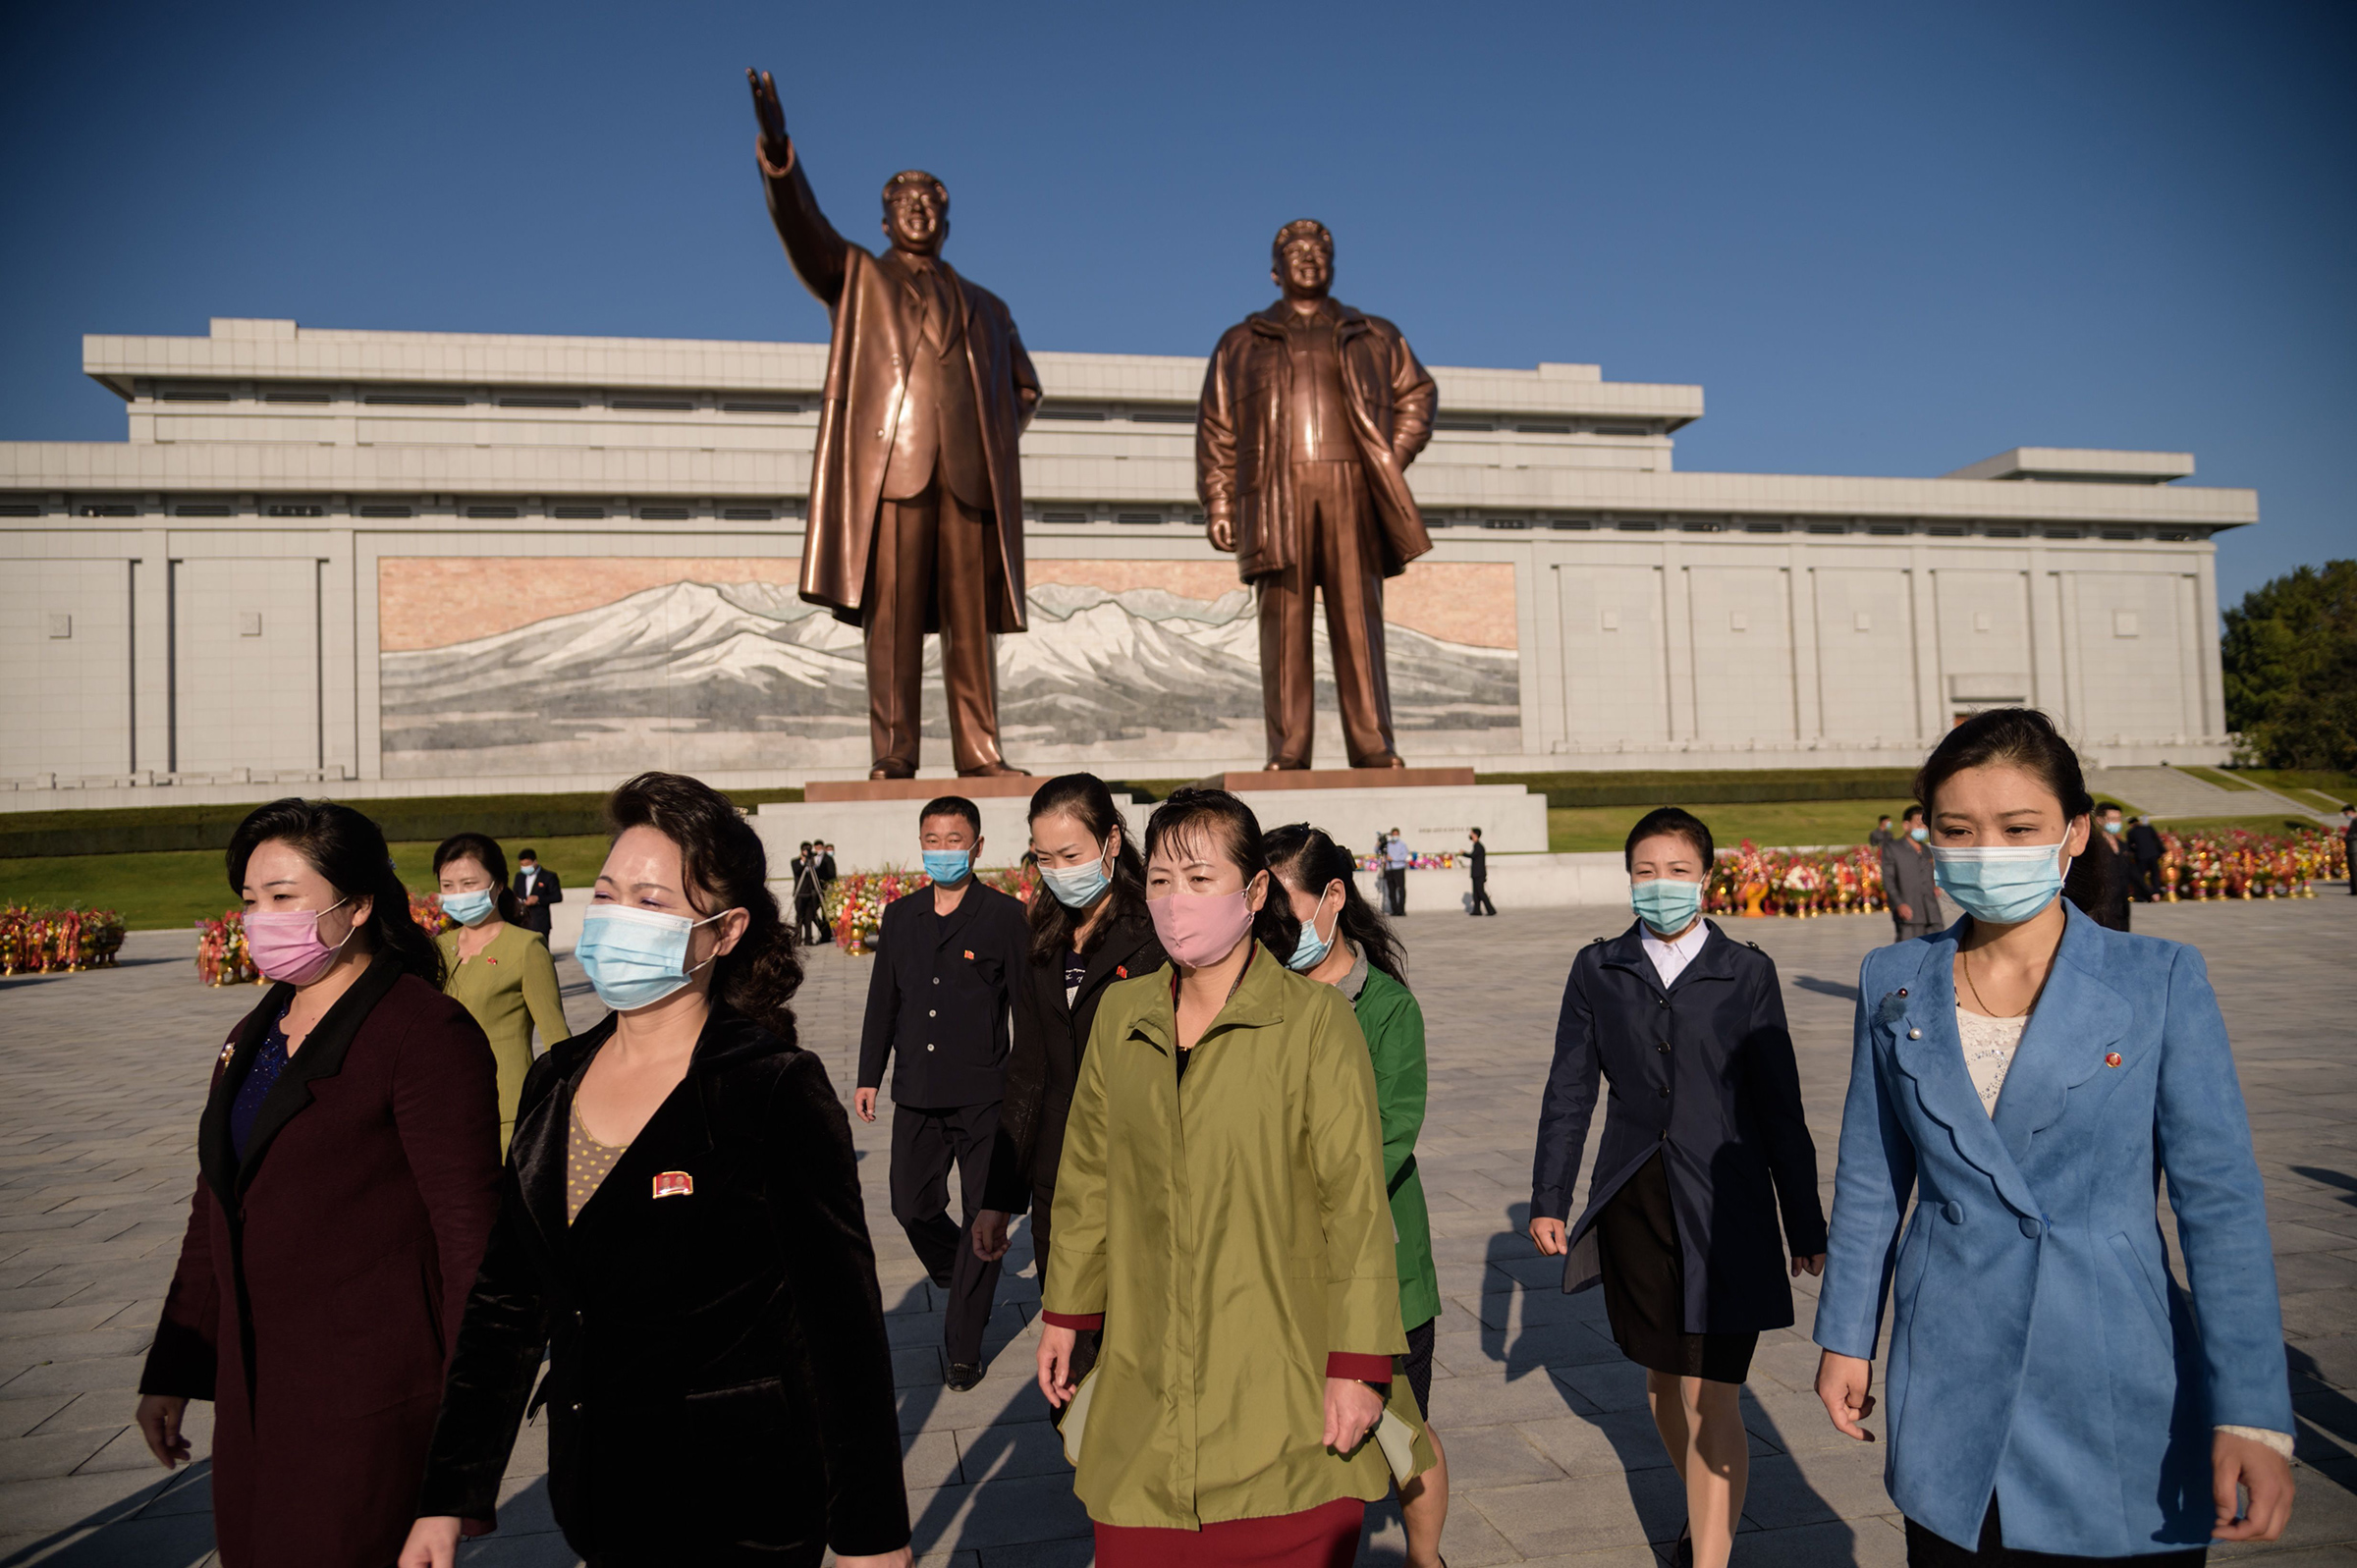 La gente se va después de presentar sus respetos a las estatuas de los difuntos líderes norcoreanos Kim Il Sung y Kim Jong Il en la colina Mansu en Pyongyang el 10 de octubre.